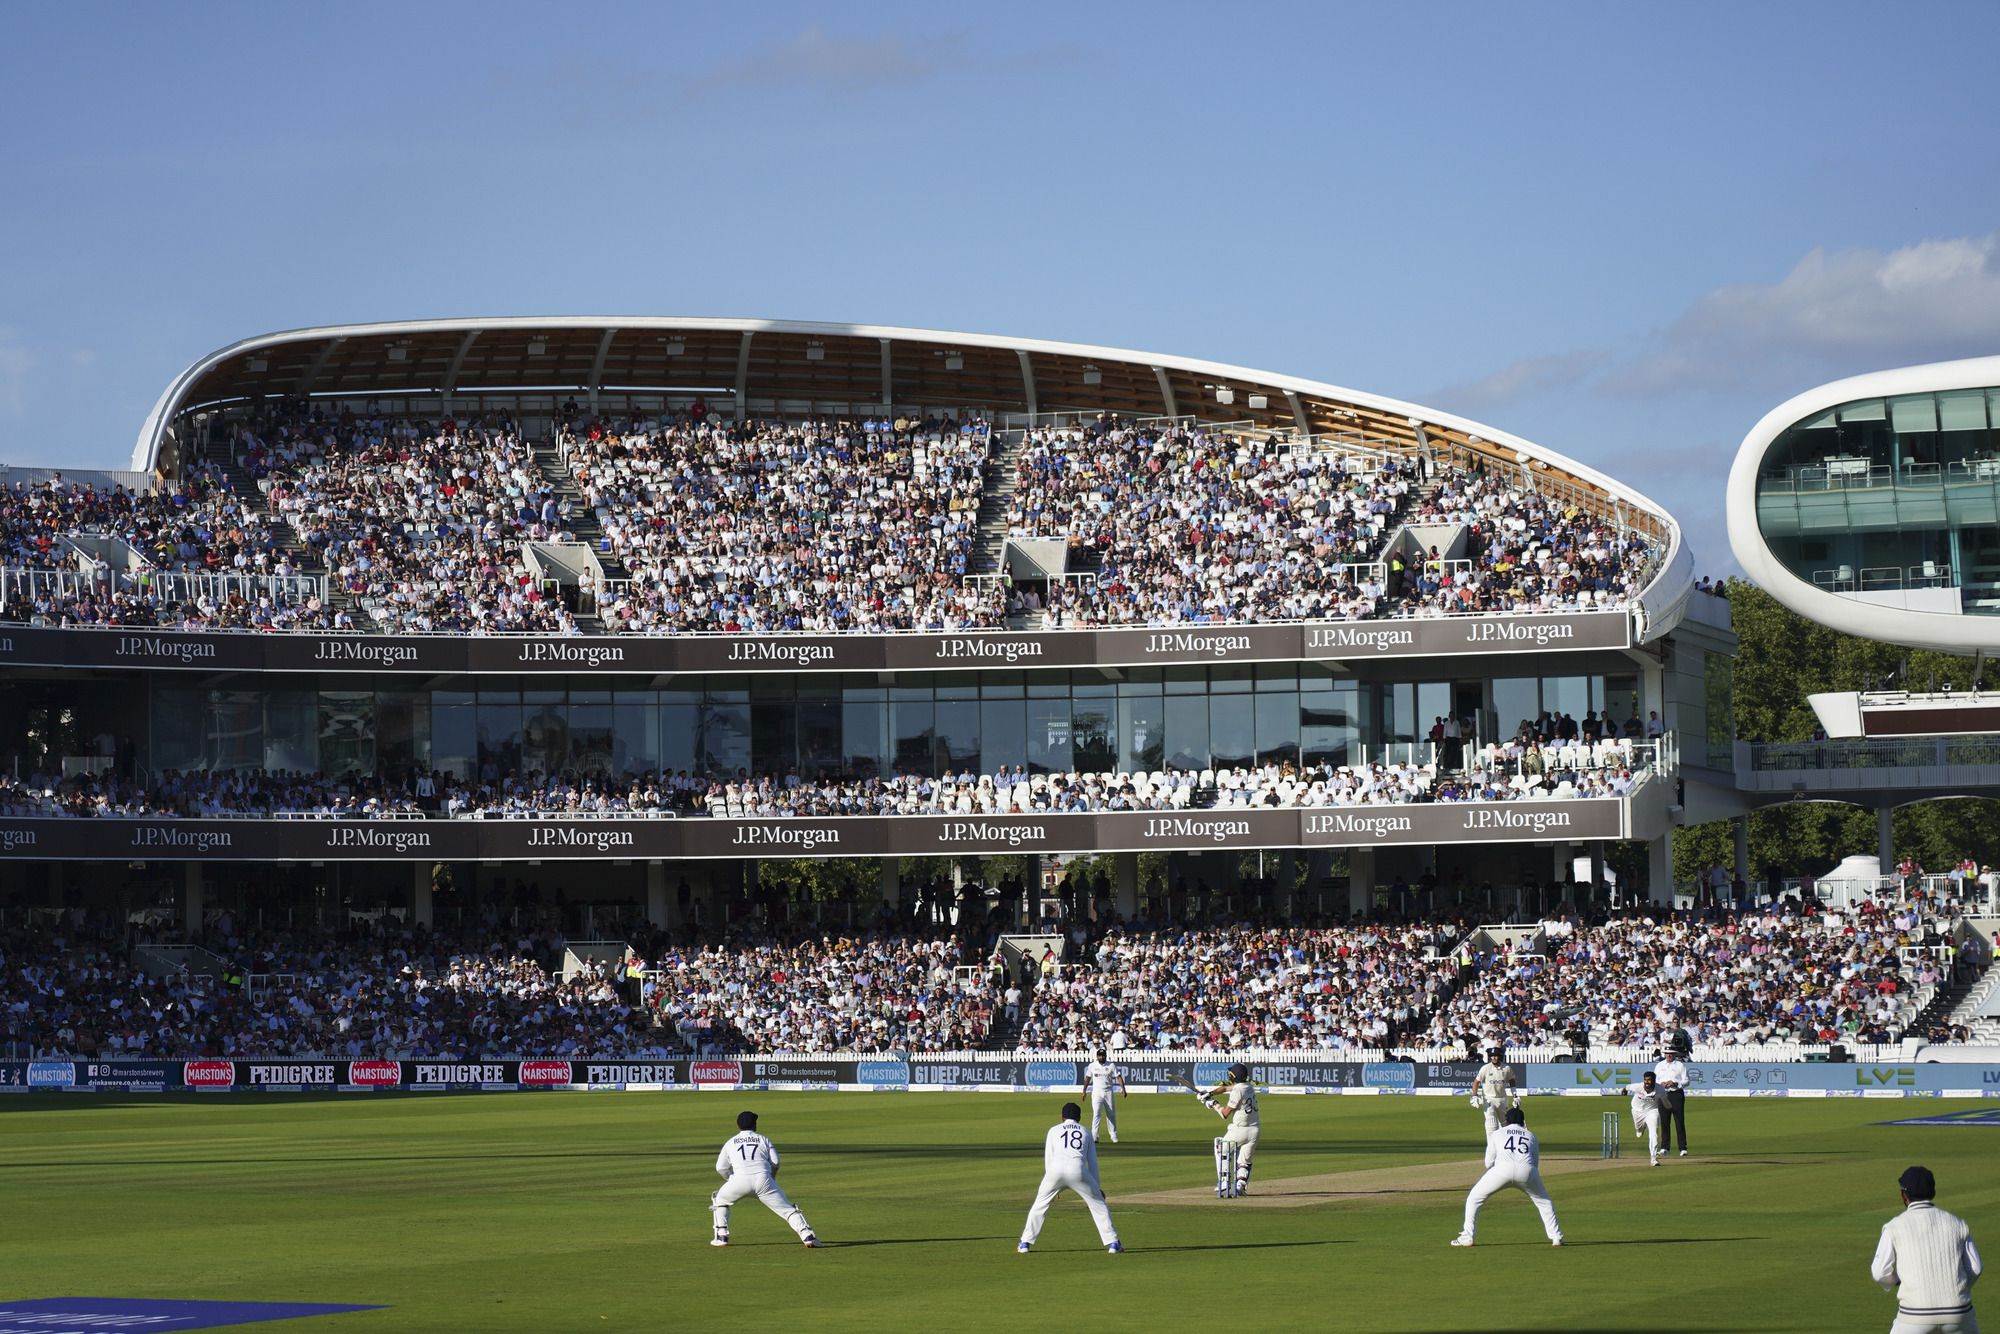 Compton & Edrich Stands Lord's Cricket Ground / WilkinsonEyre